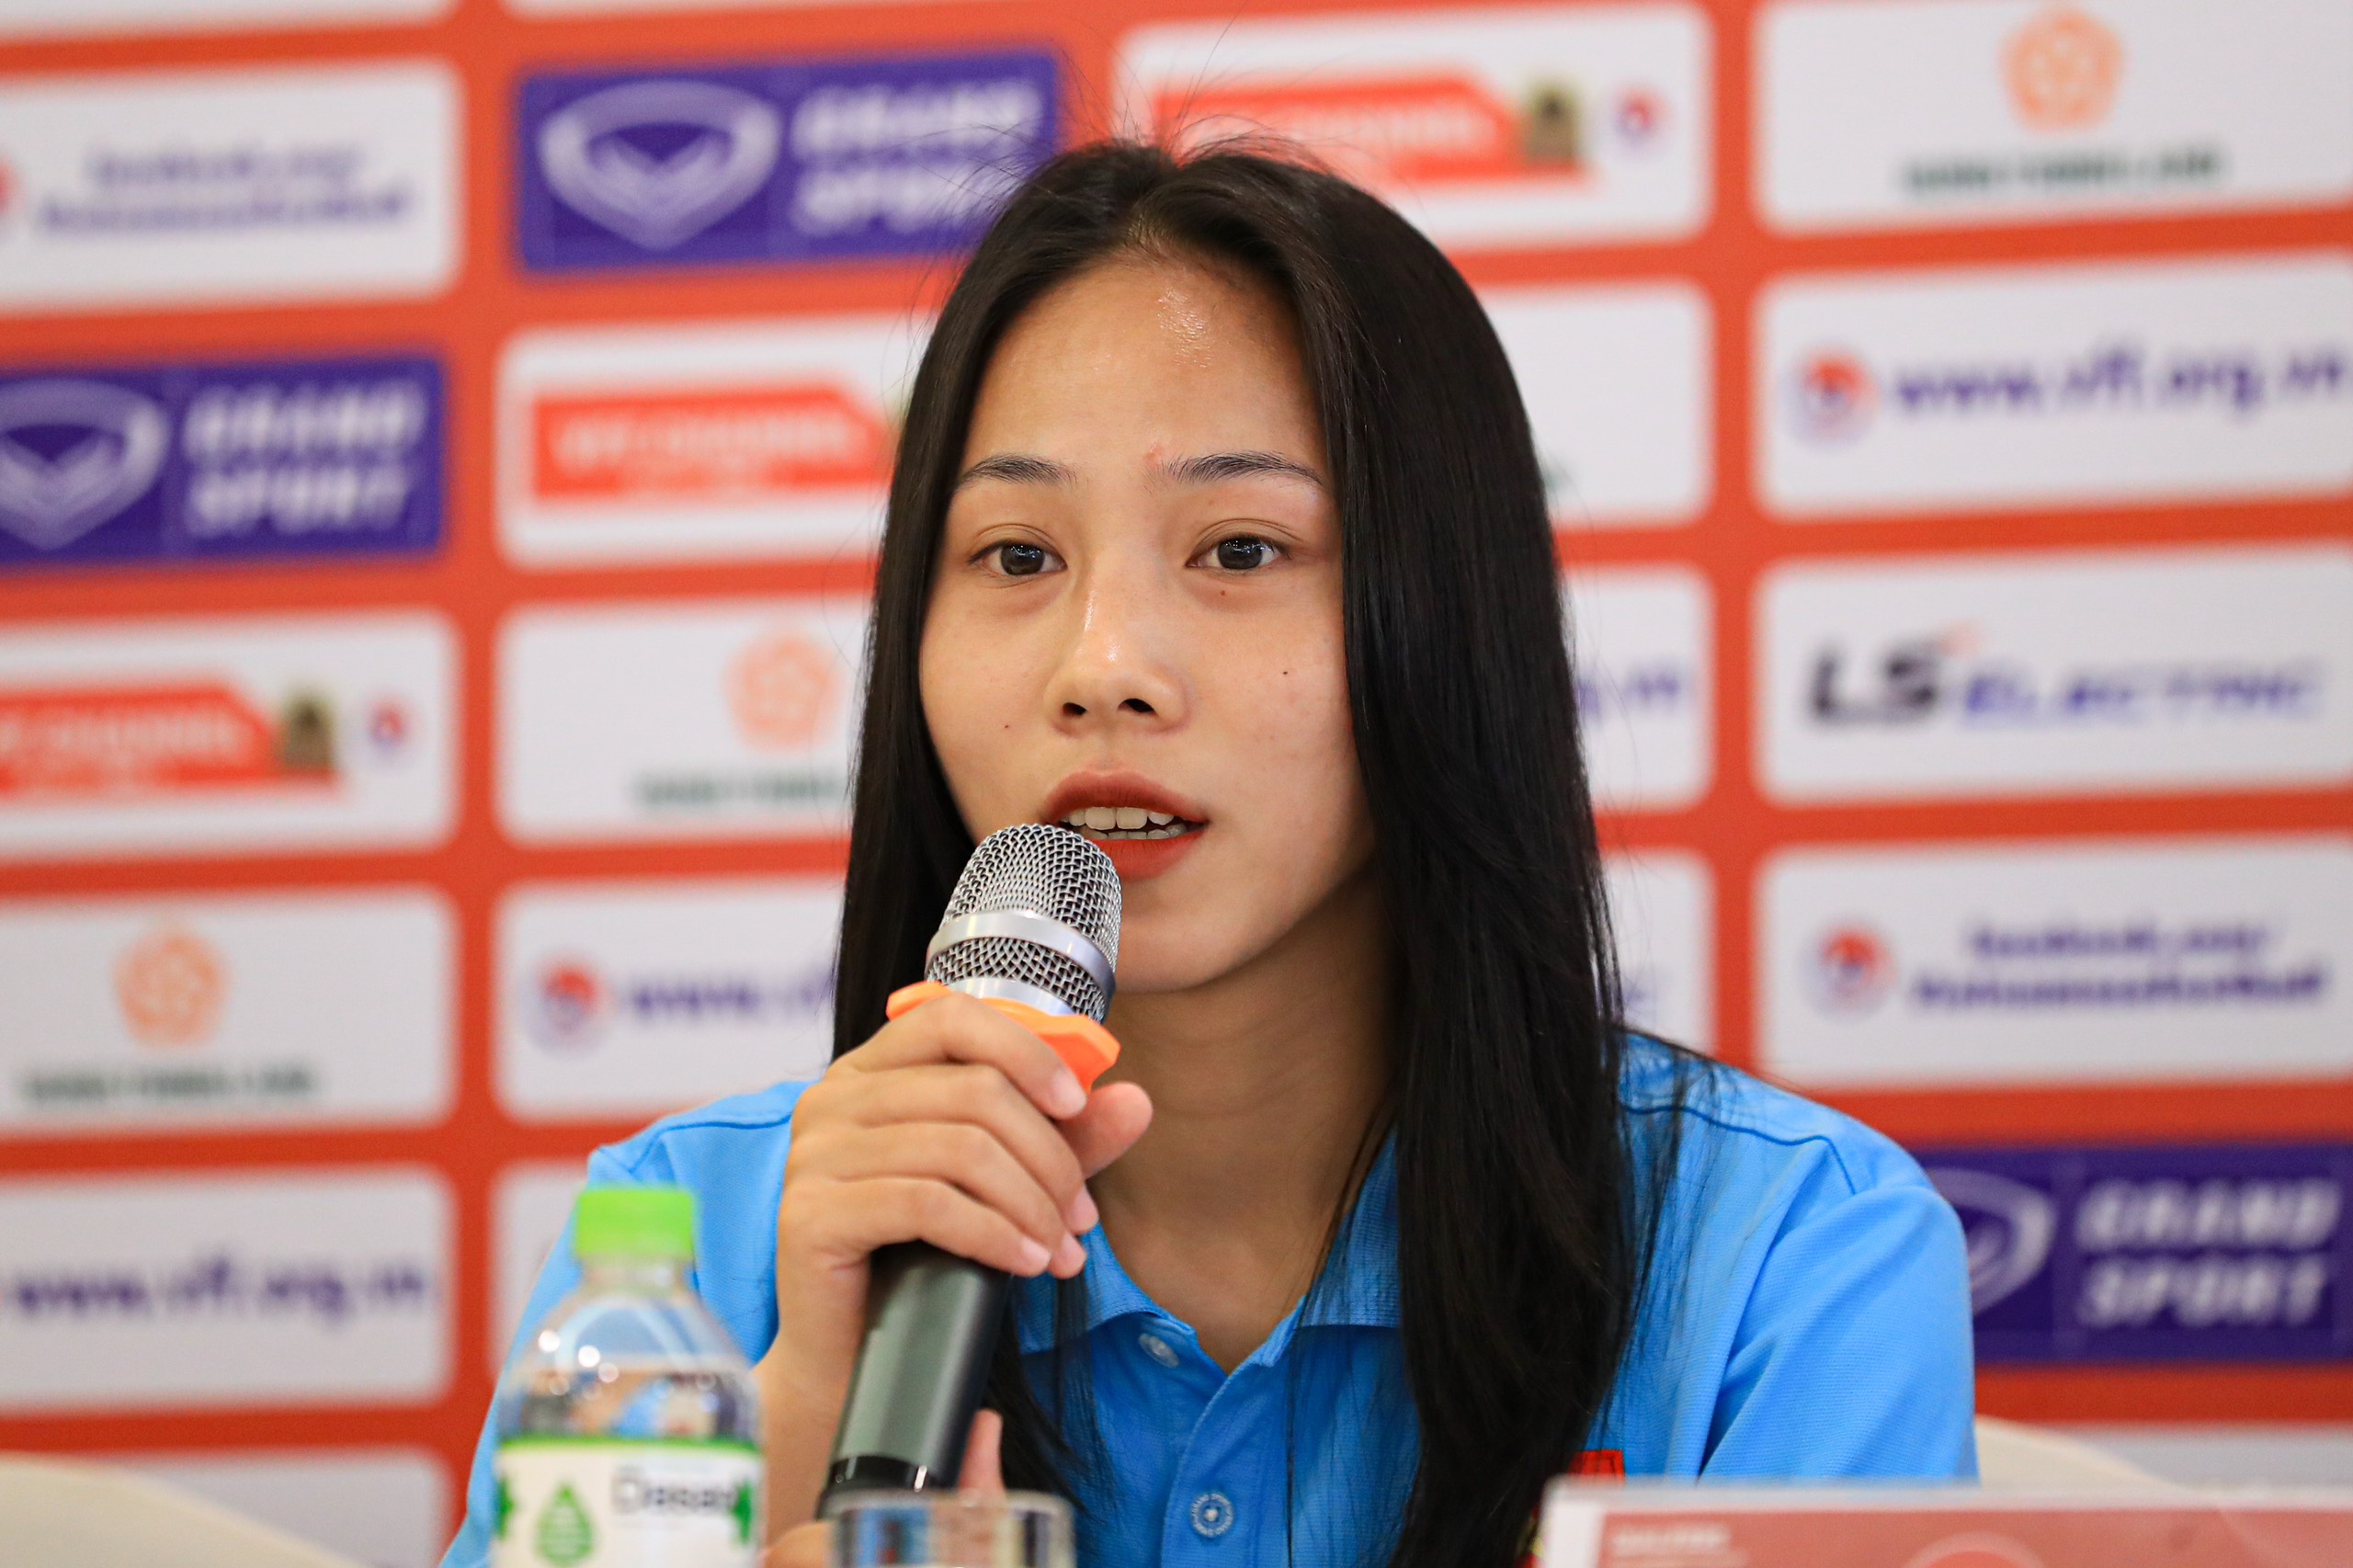 Hotgirl U20 nữ Việt Nam không ngán đối thủ có thể hình vượt trội tại vòng loại giải châu Á